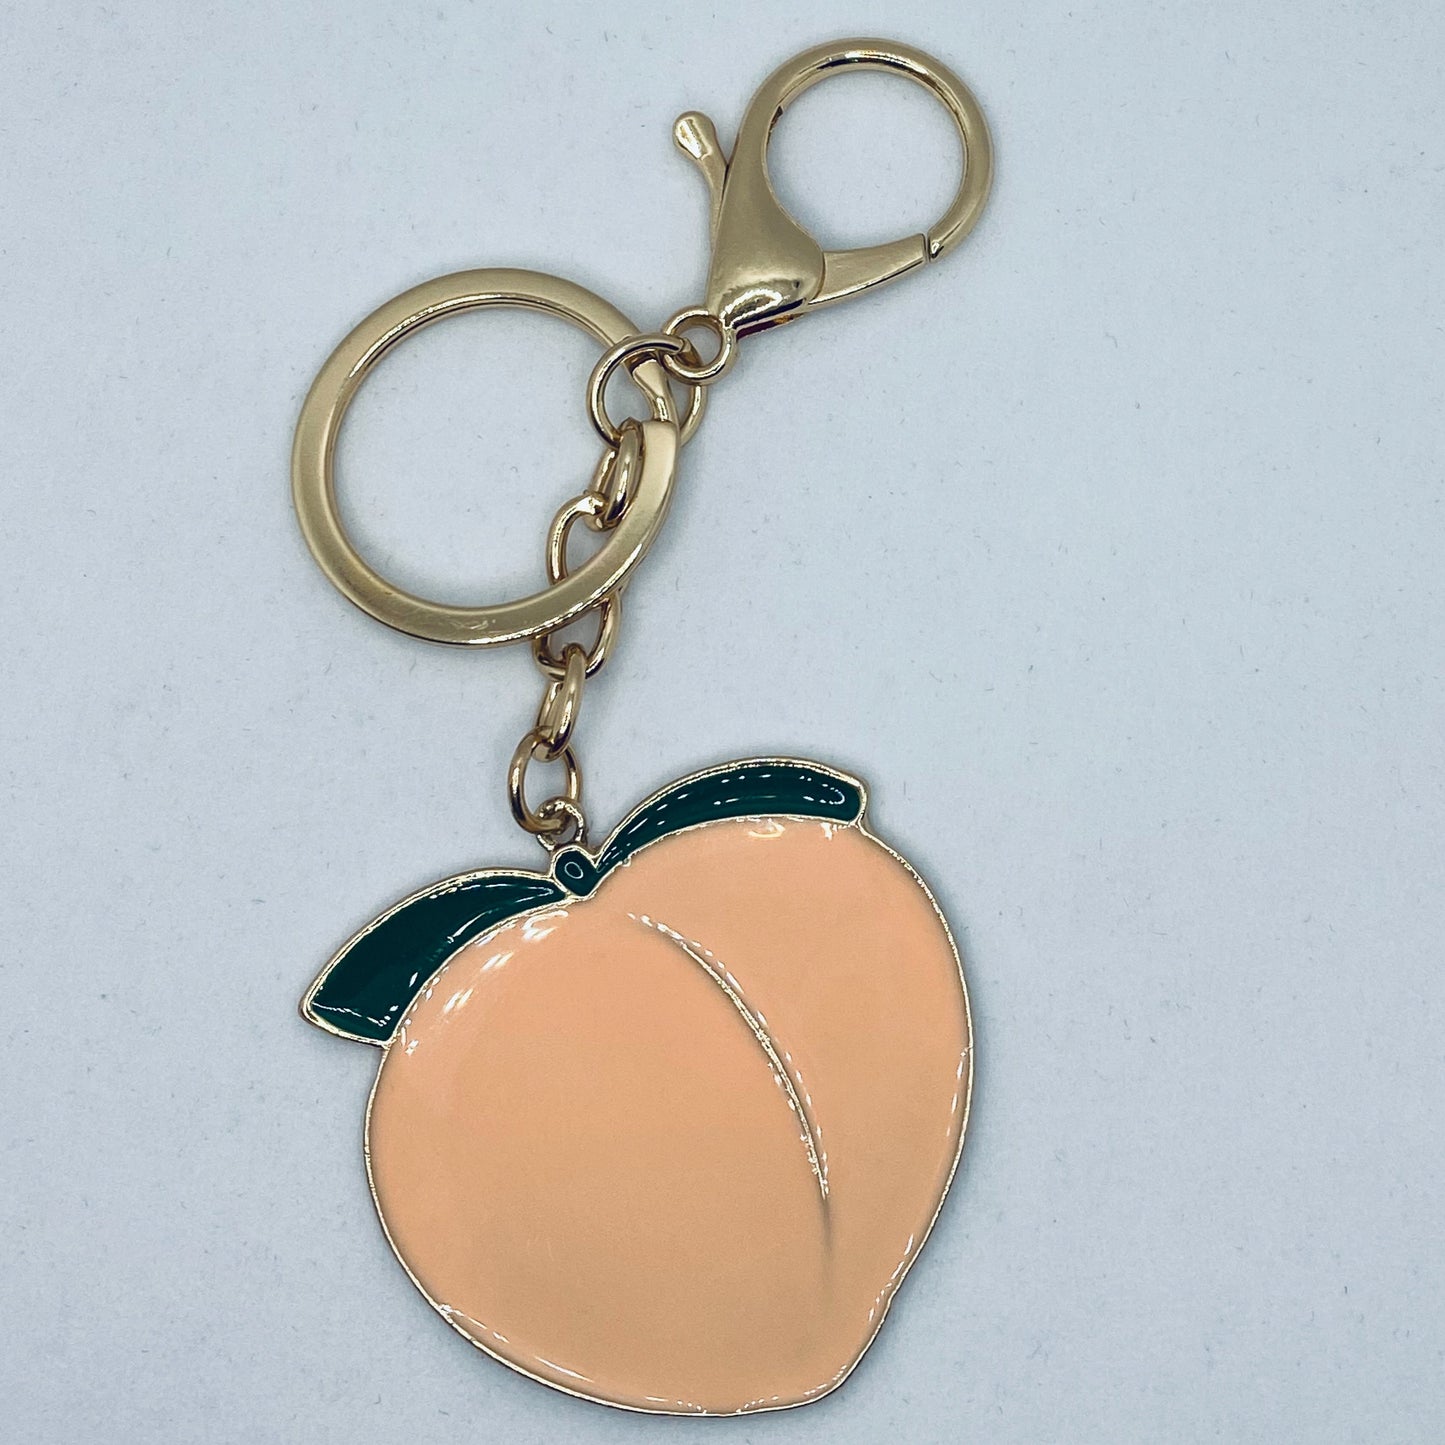 Peach Booty Key Chain